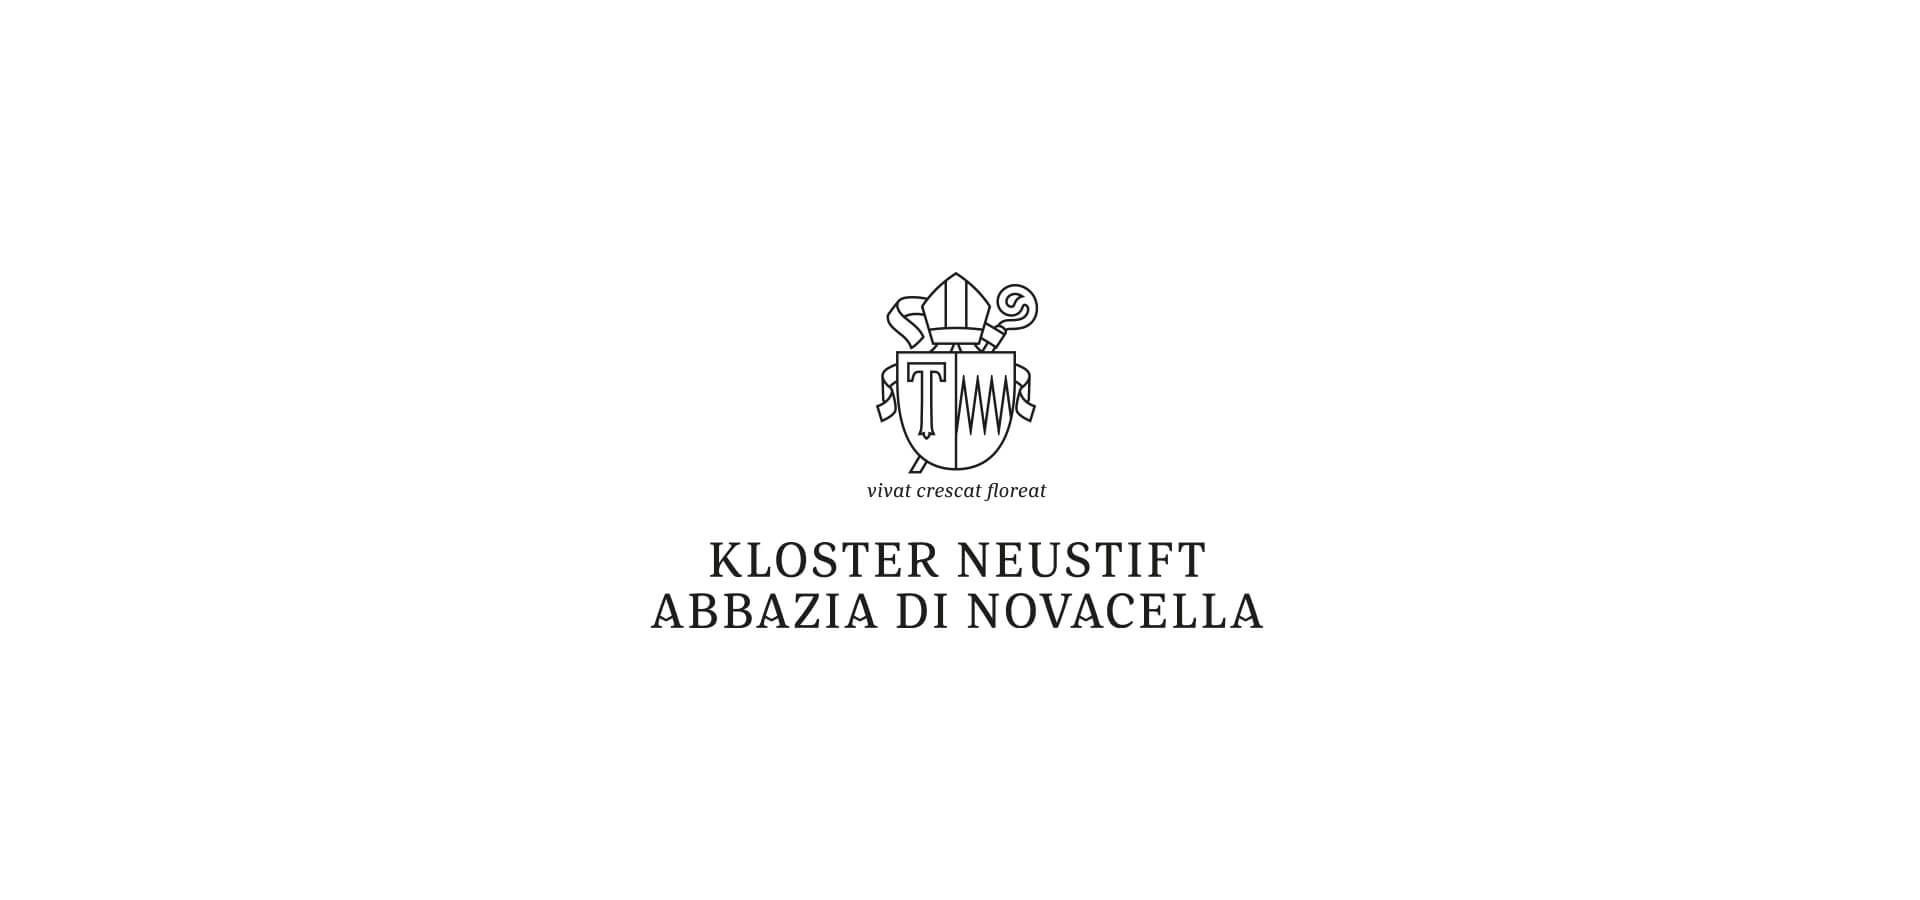 Kloster Neustift Abbazia di Novacella